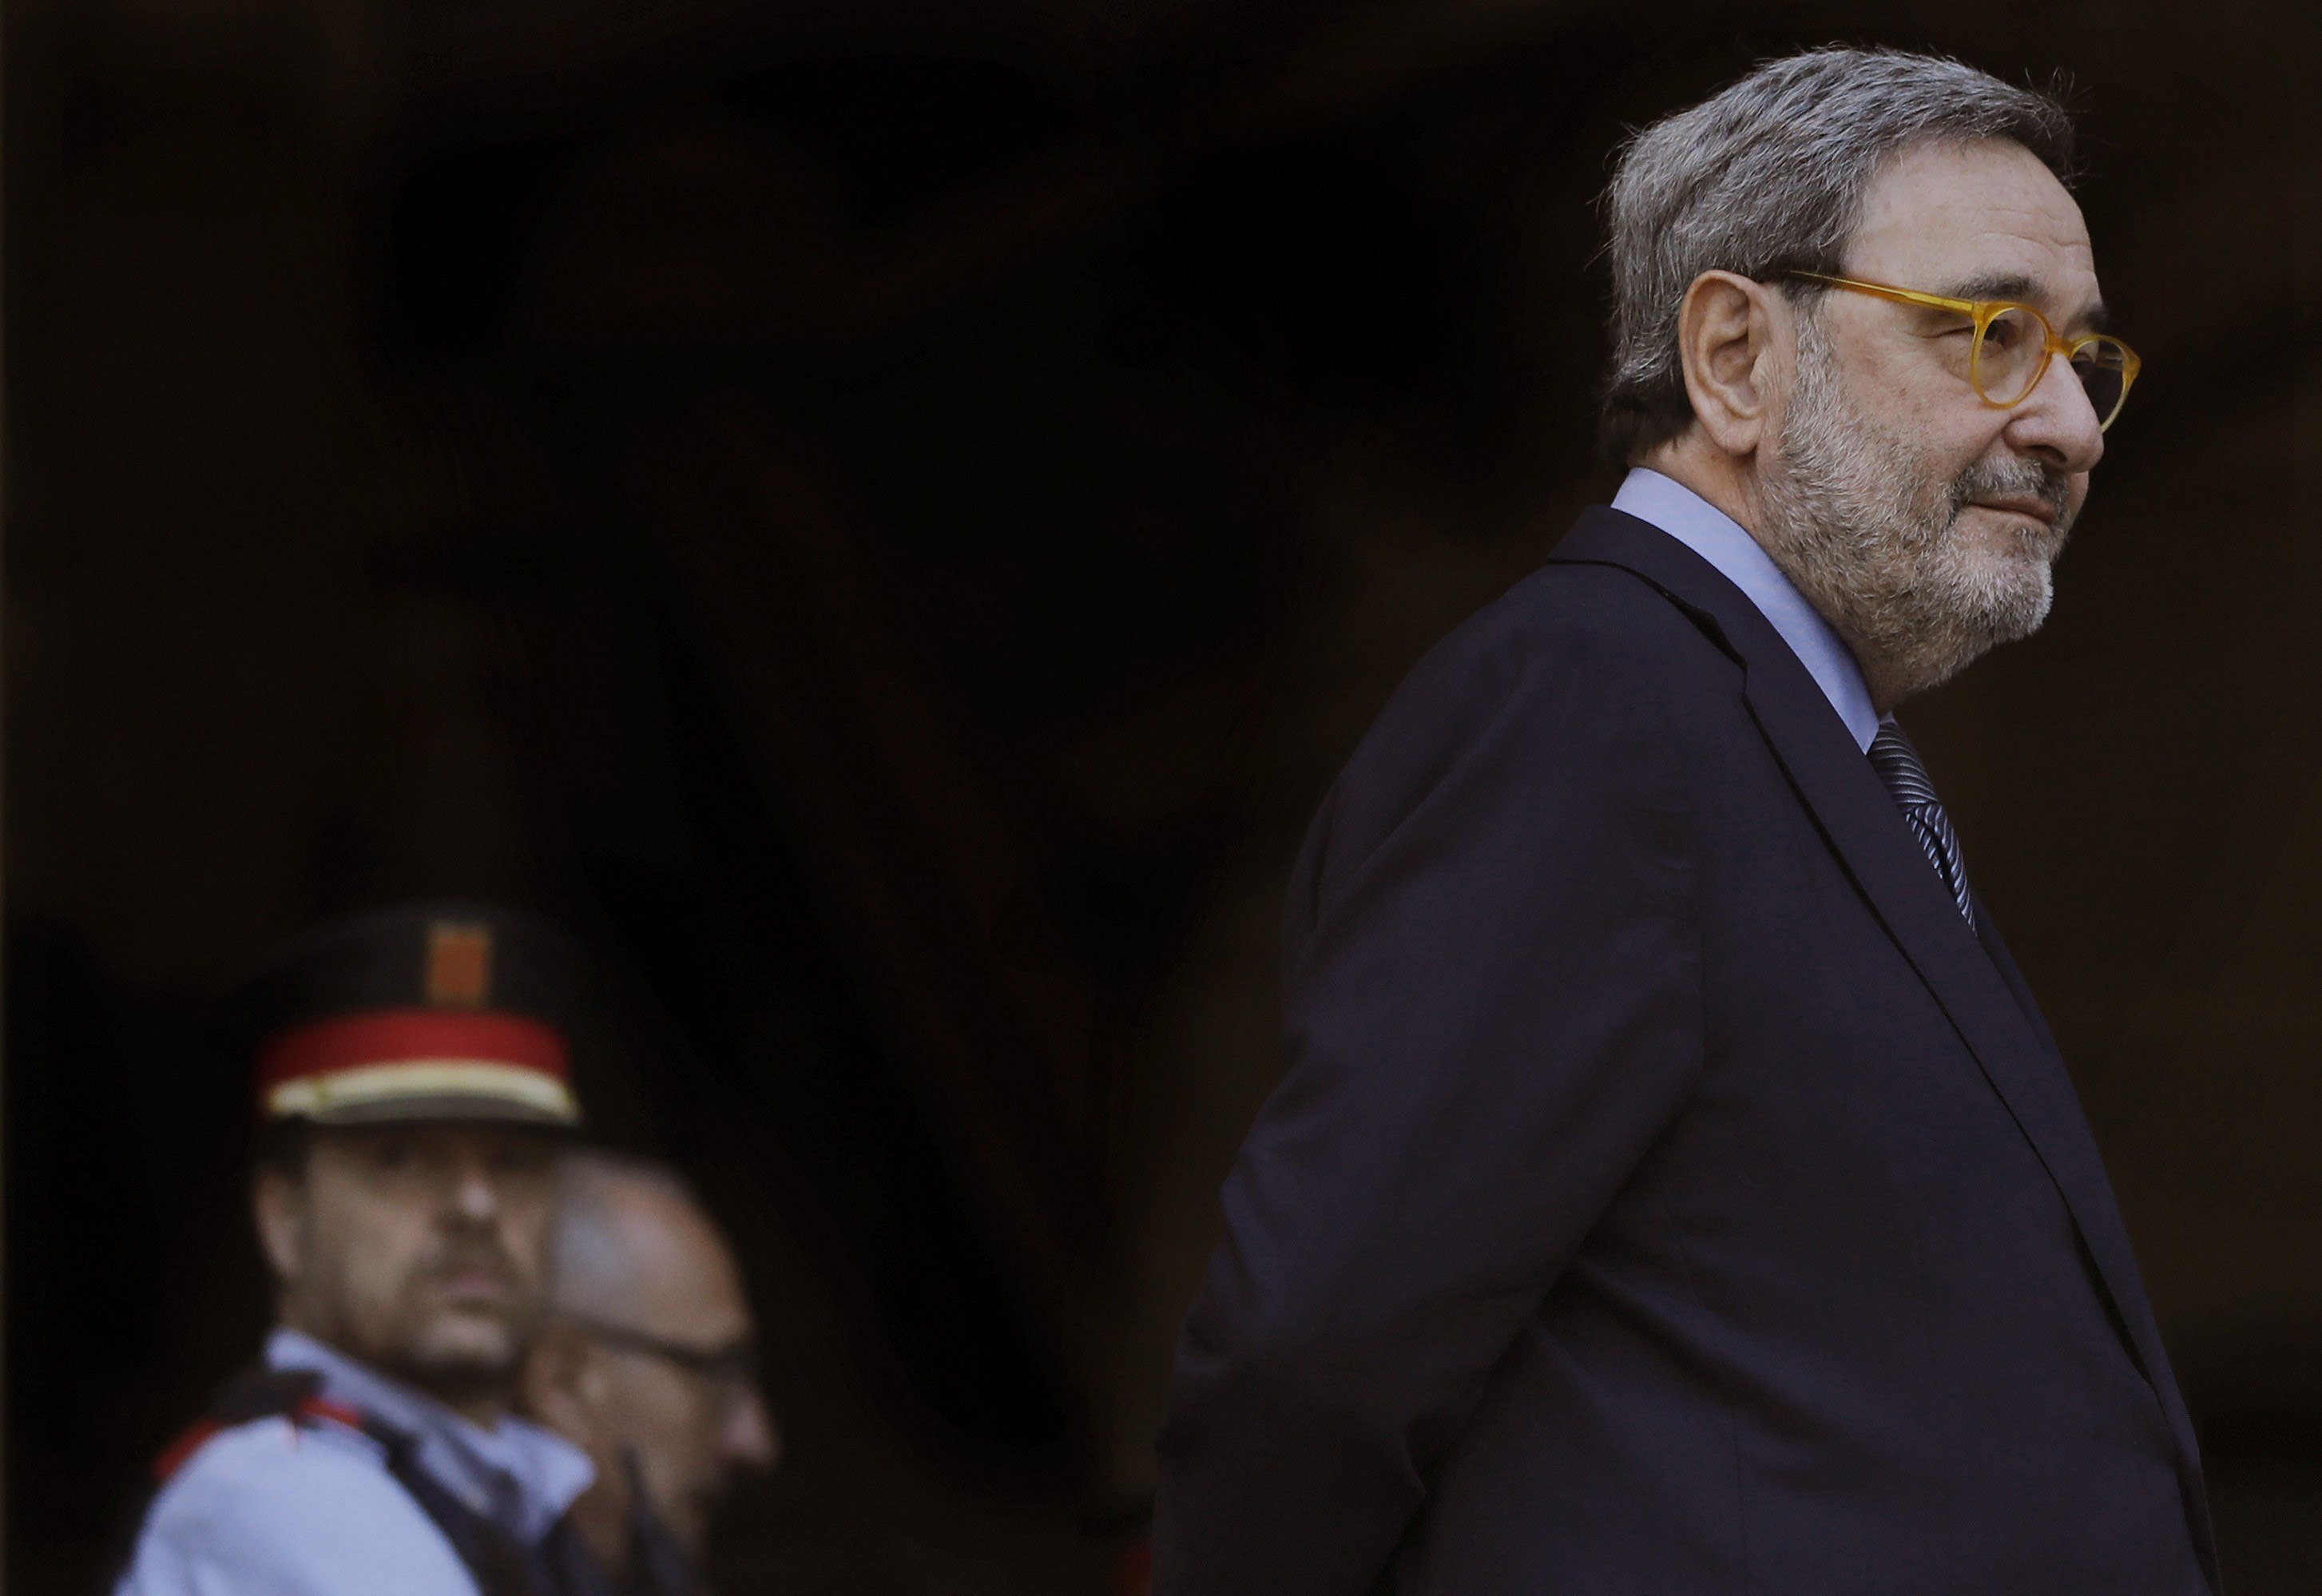 El precedent del CatalanGate que va acabar amb dimissions a La Moncloa fa 27 anys